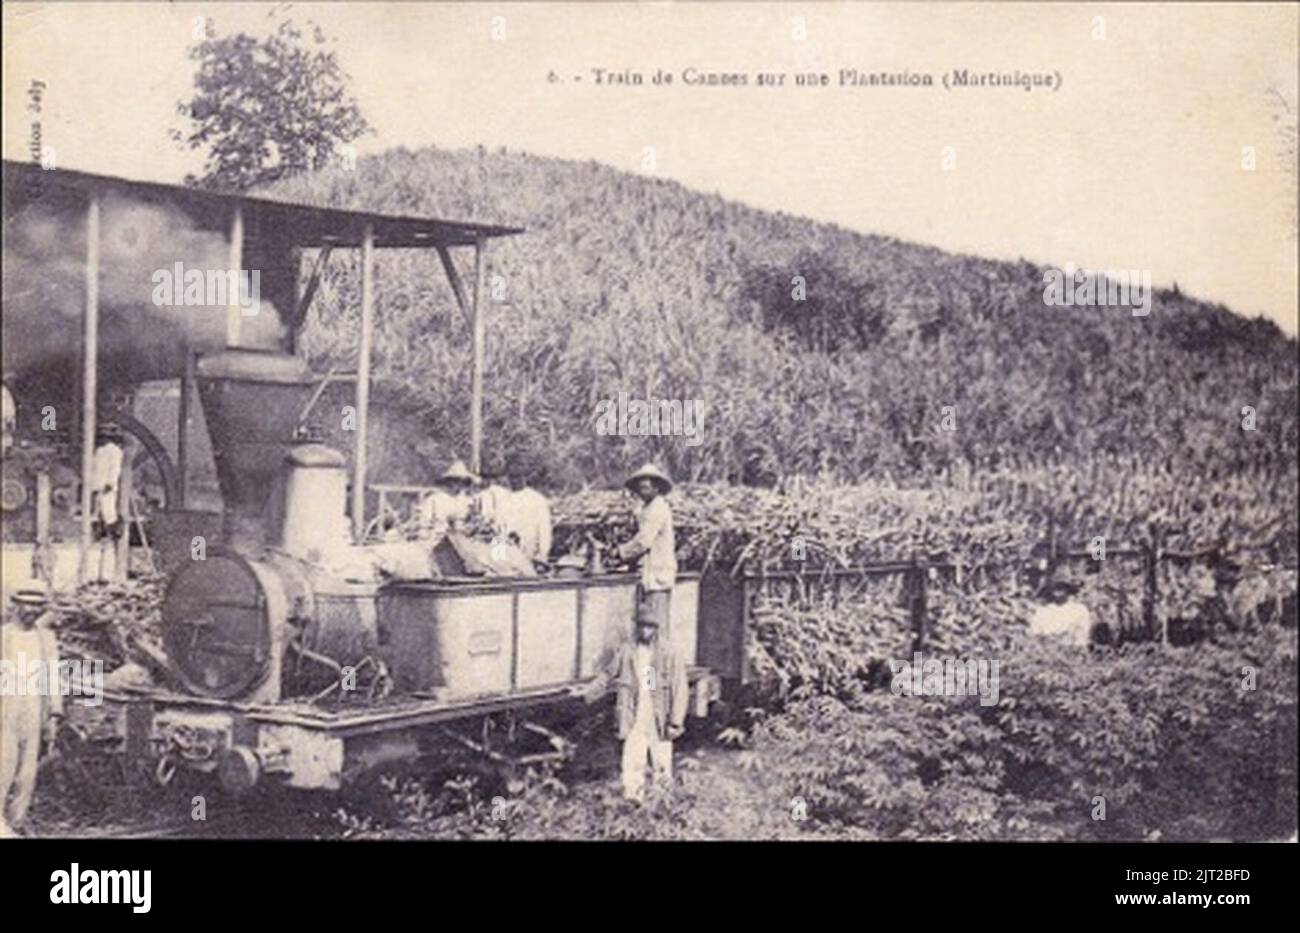 Train de canne a sucre sur une plantation. Stock Photo